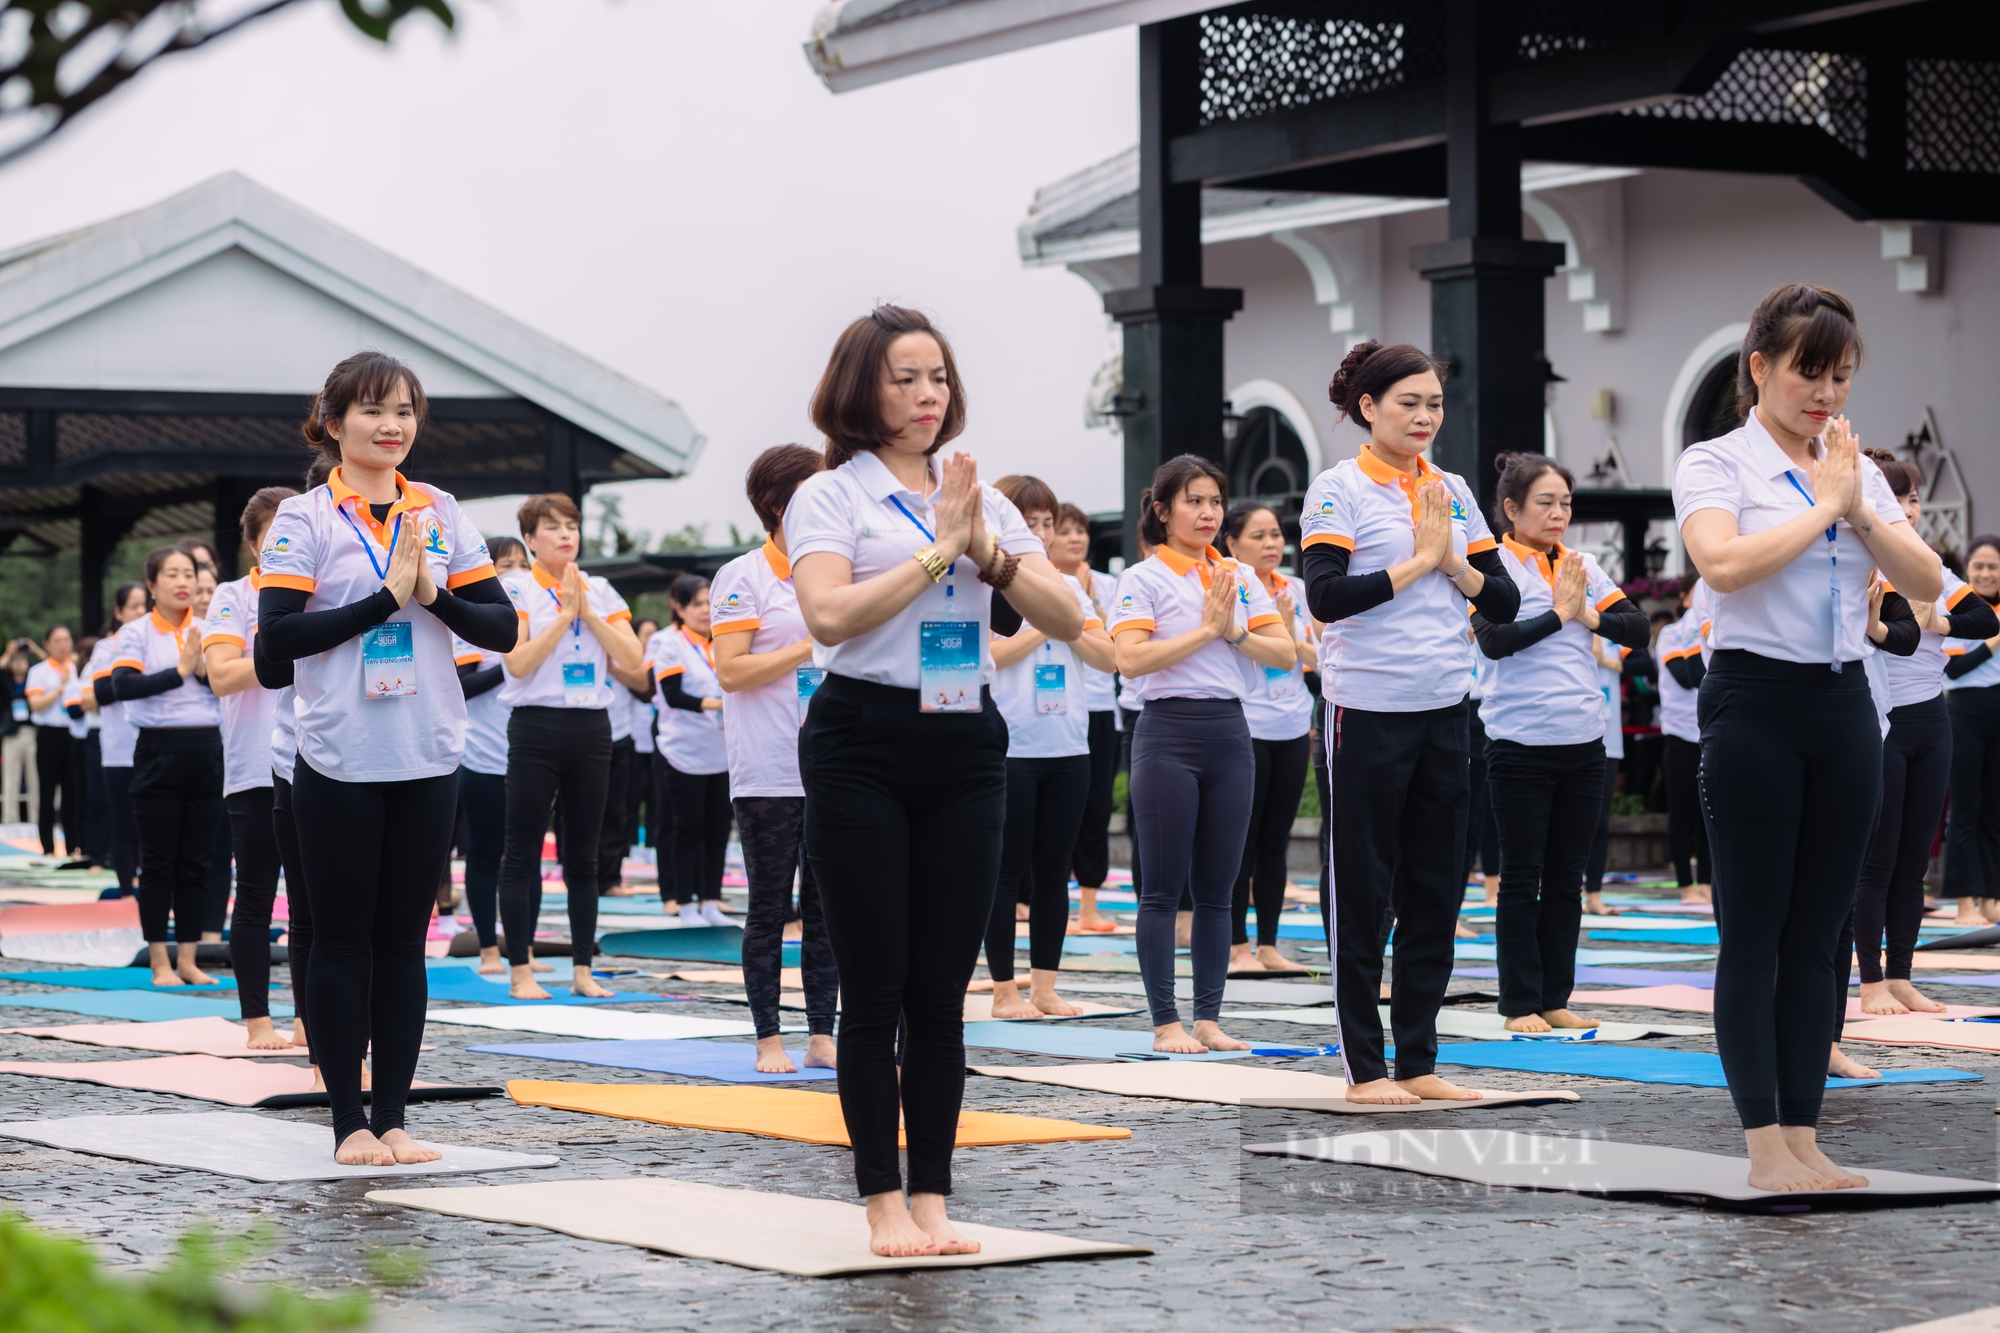 Yoga môn thể thao trị liệu sức khỏe cho du khách khi đến Sa Pa - Ảnh 4.